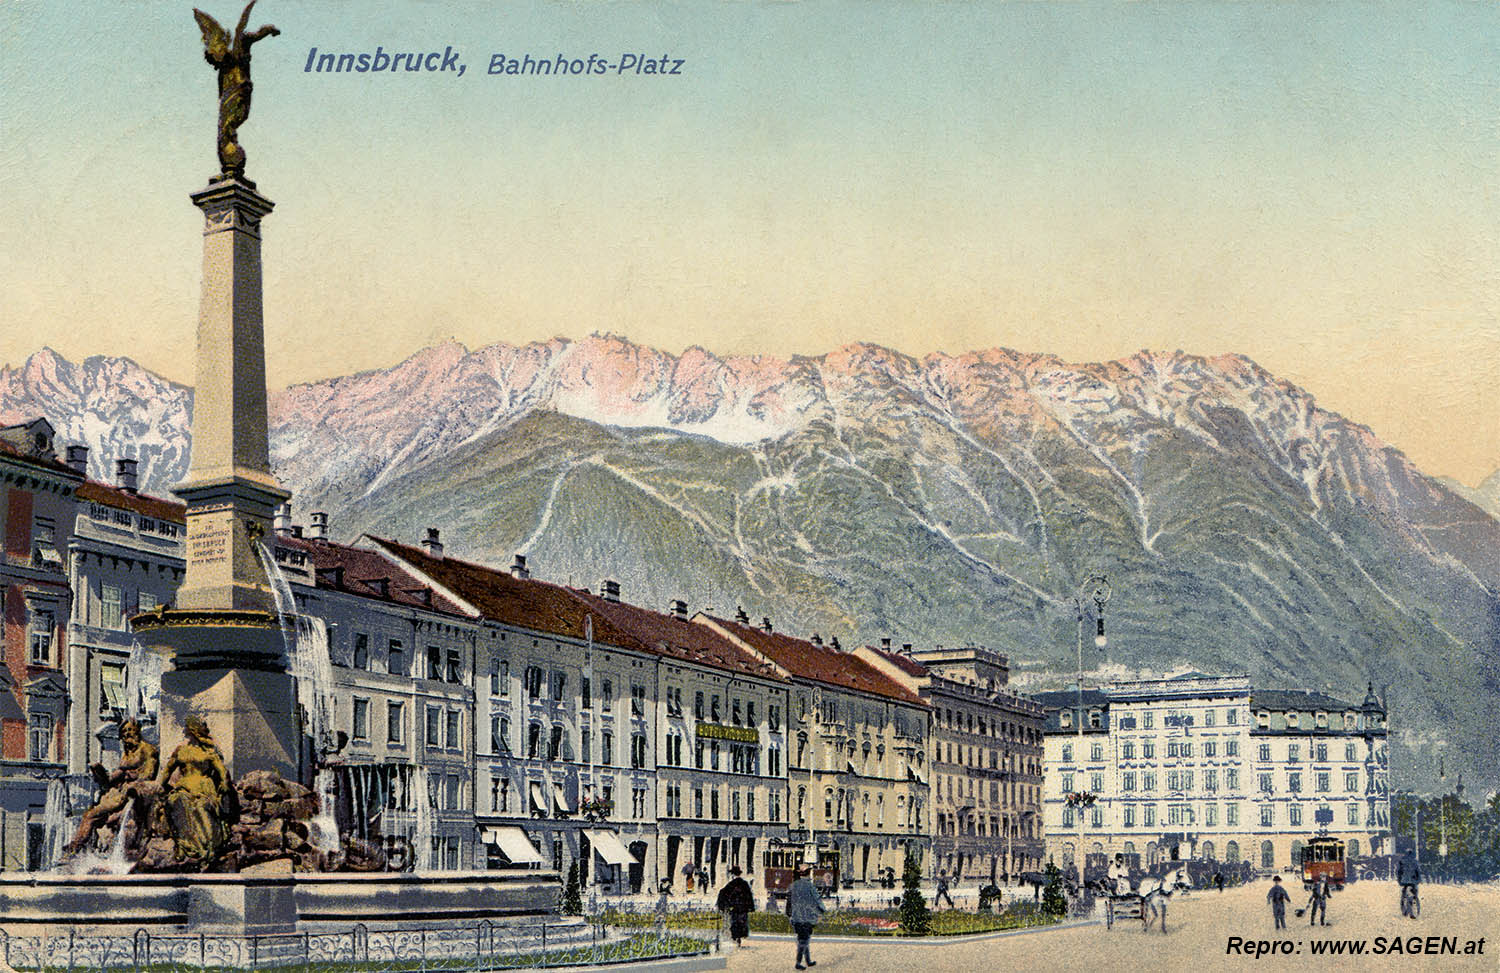 Innsbruck, Bahnhofs-Platz